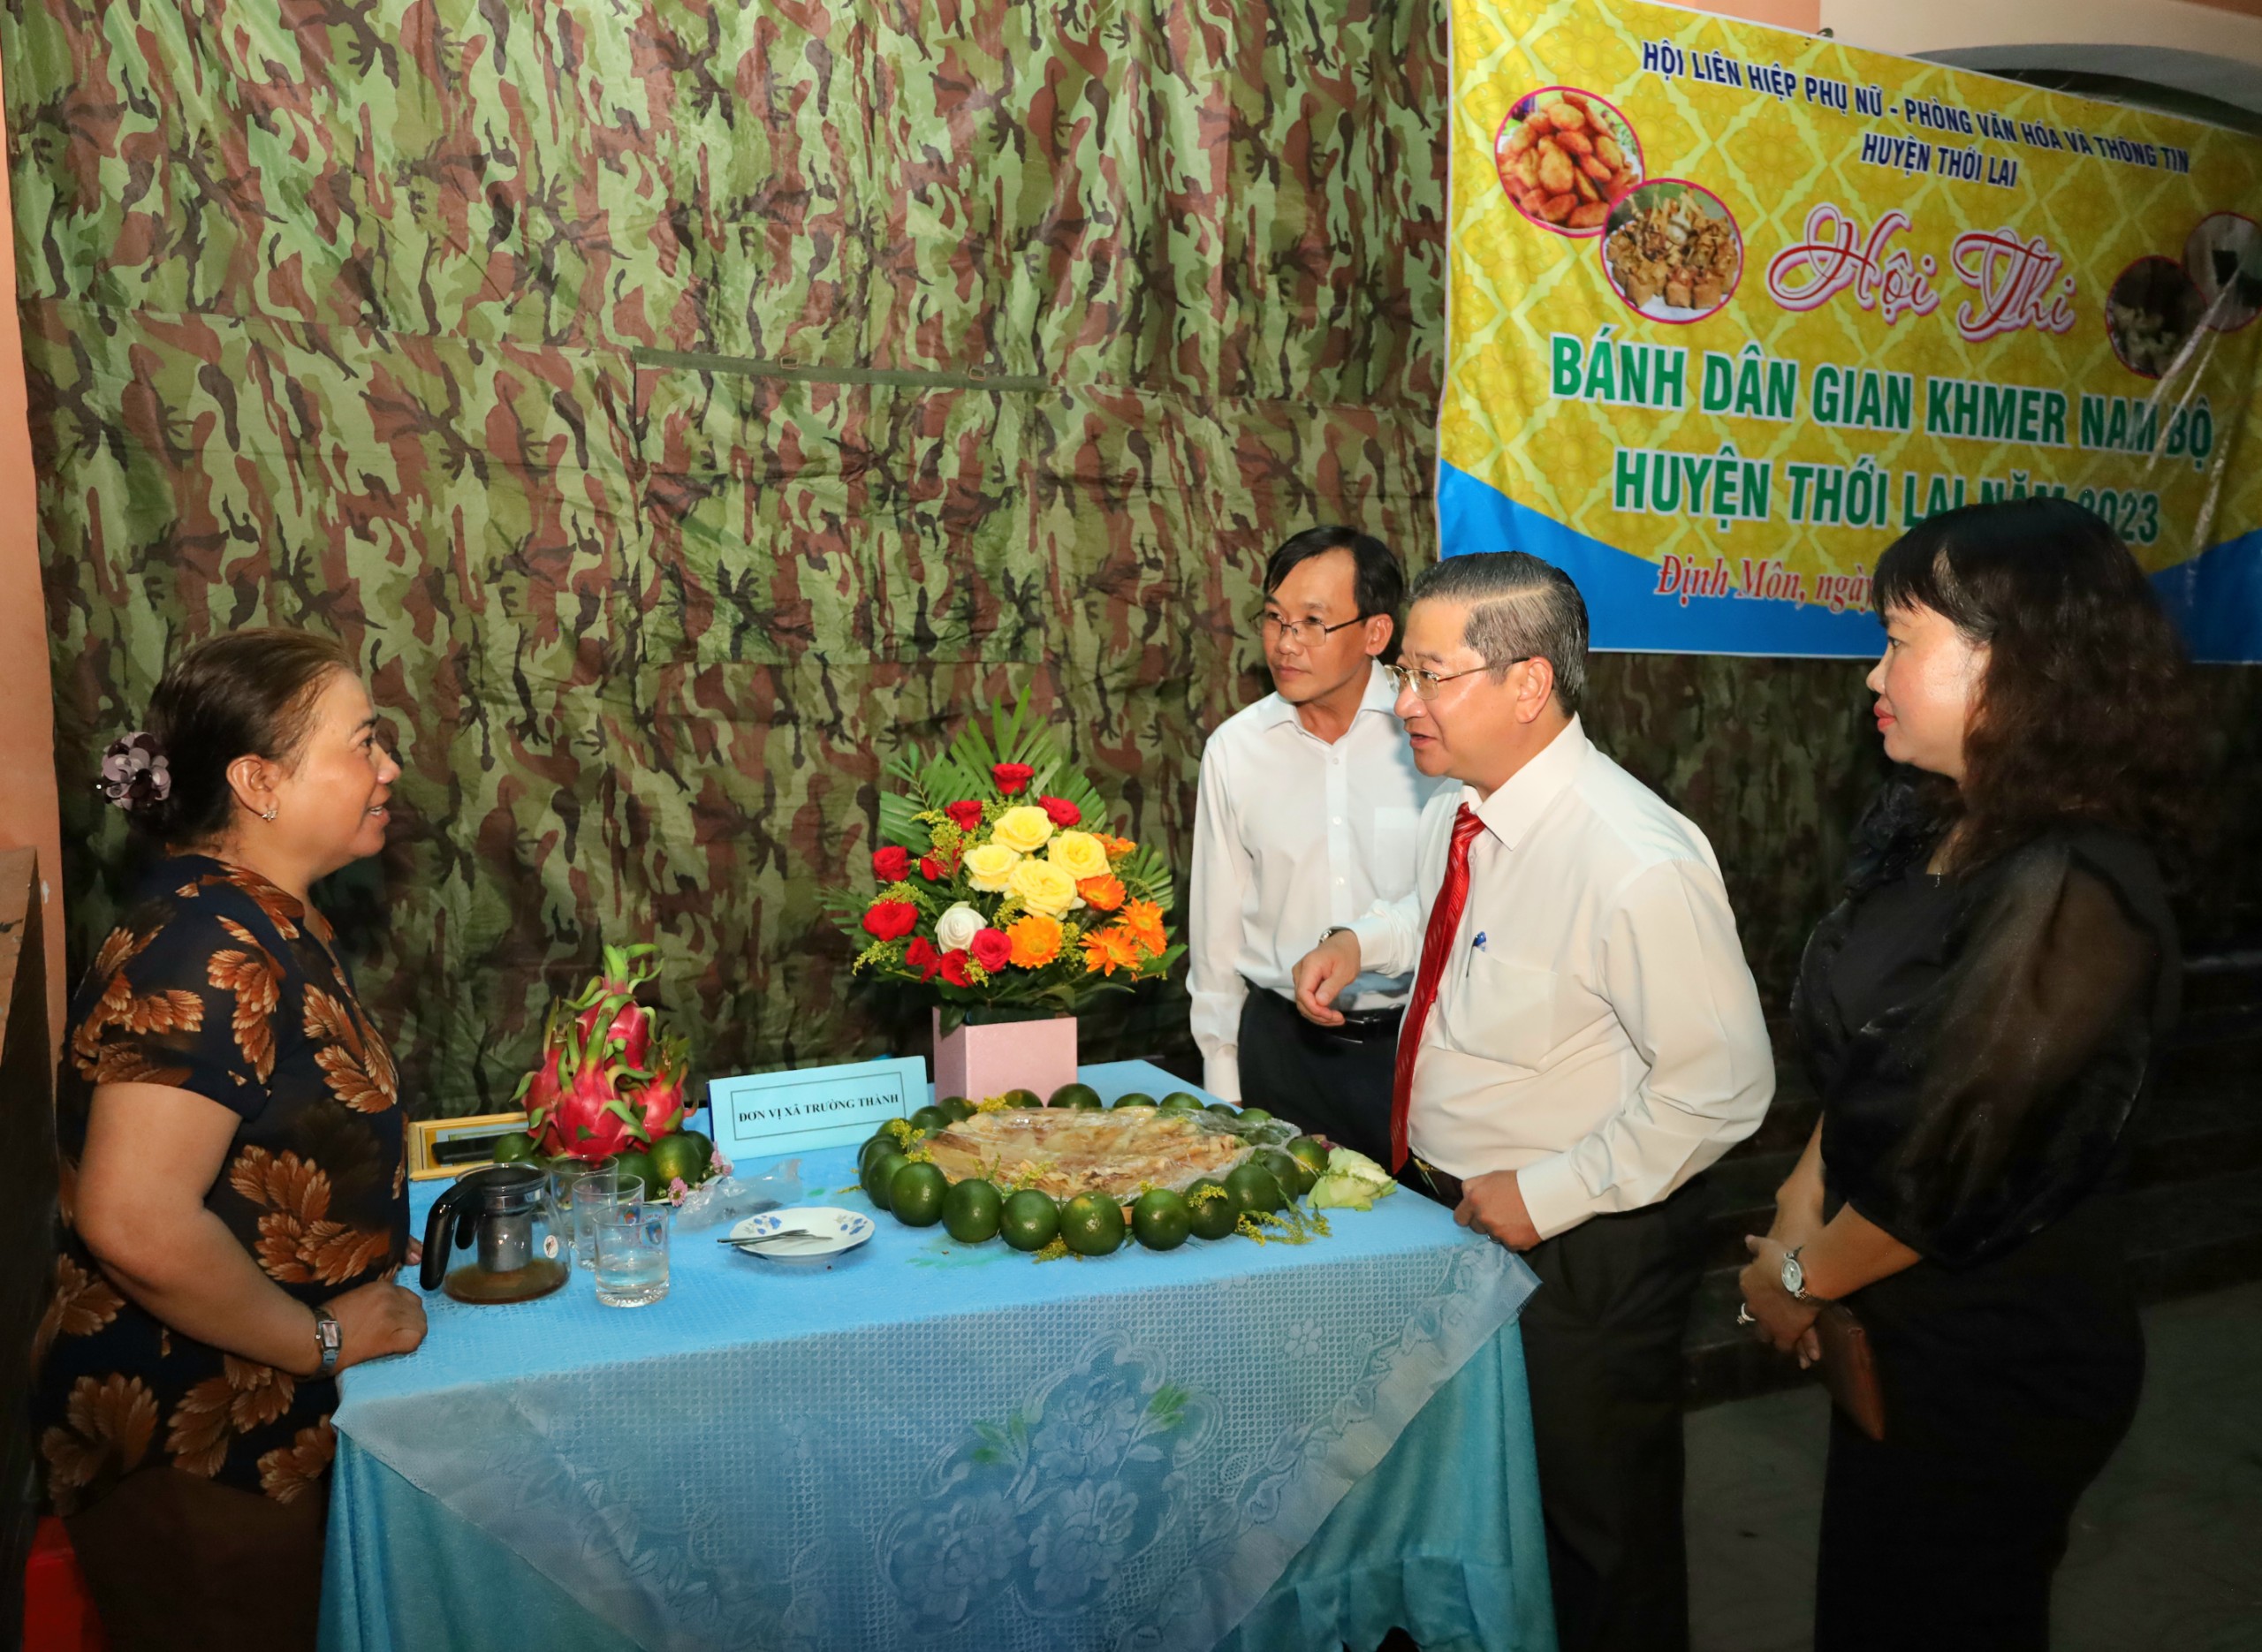 Ông Trần Việt Trường - Phó Bí thư Thành ủy, Chủ tịch UBND TP. Cần Thơ trò chuyện cùng nghệ nhân làm bánh dân gian Khmer.